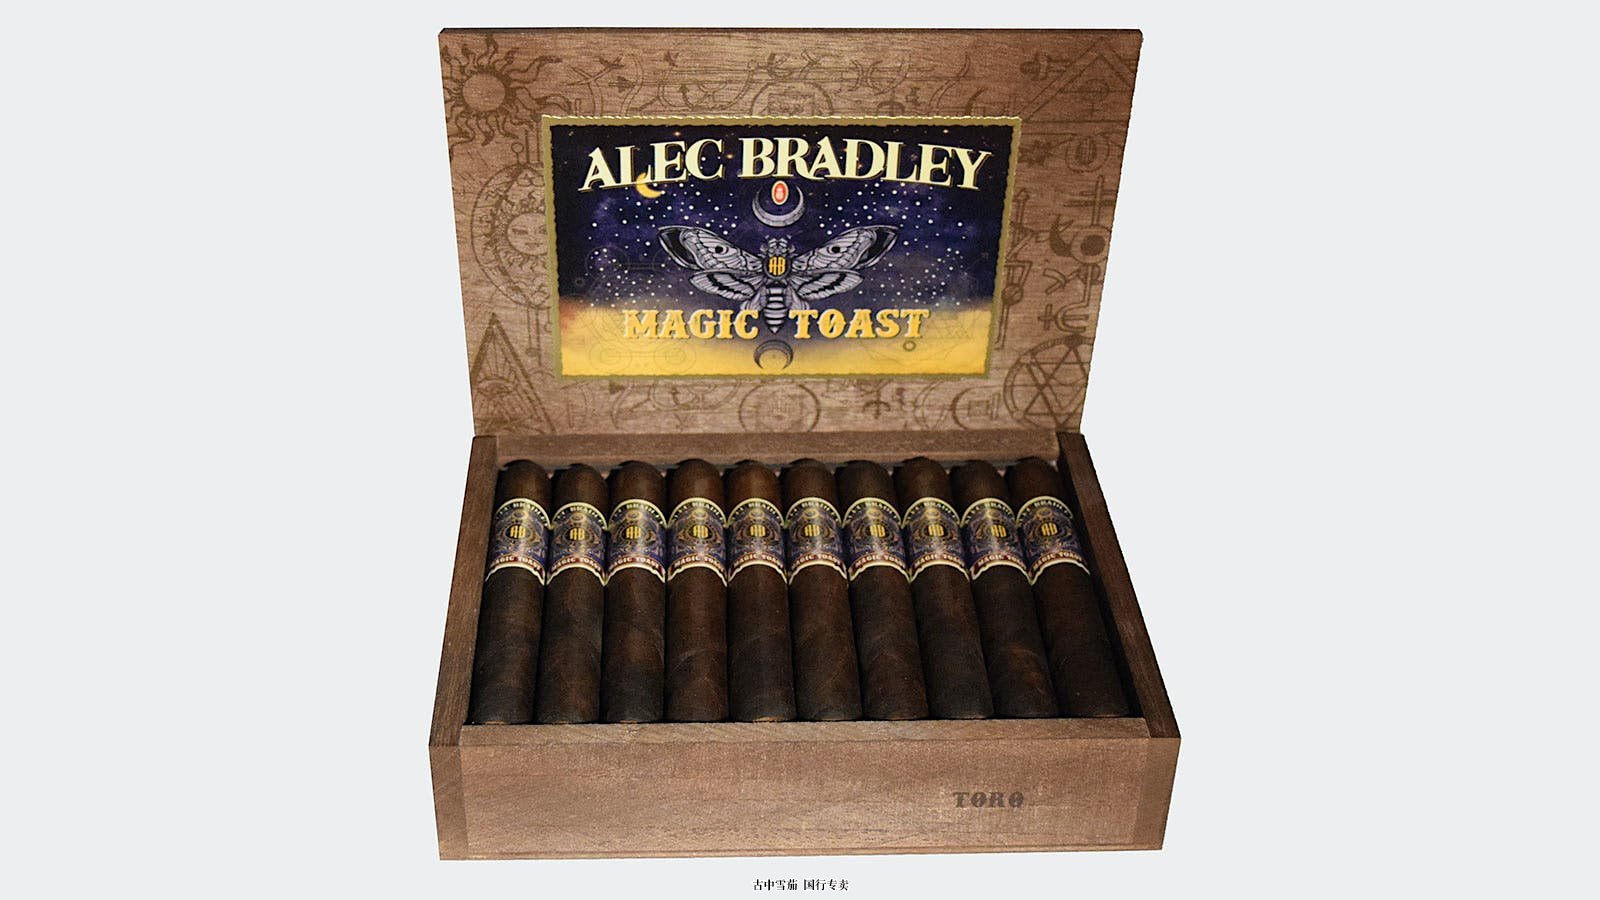 亚历克·布拉德利 (Alec Bradley) 的 IPCPR 神秘雪茄是神奇吐司